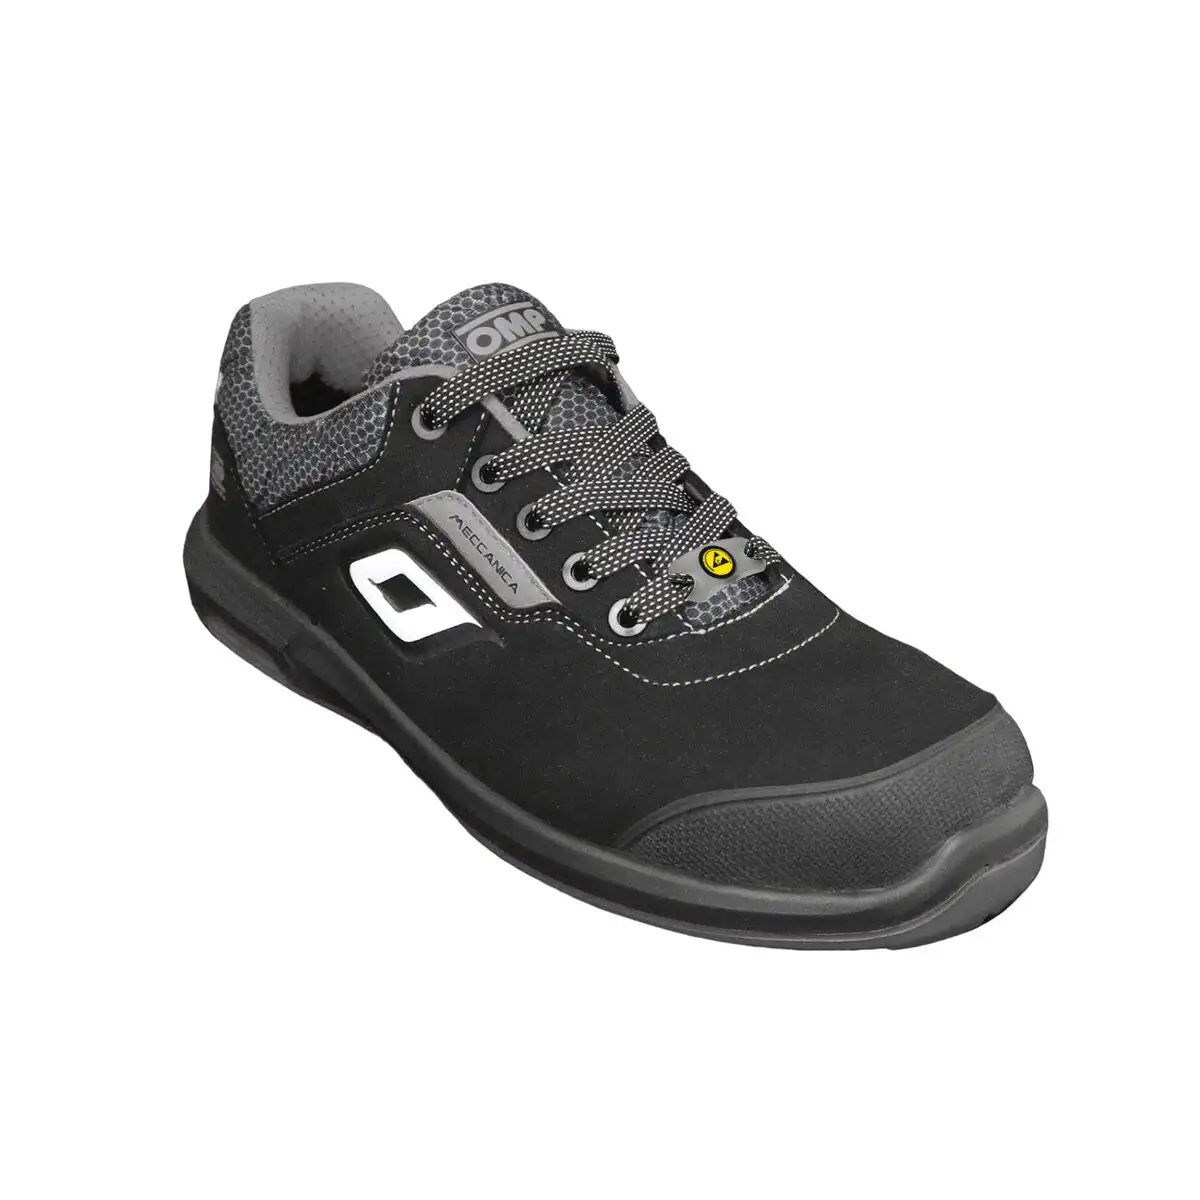 Chaussures de securite omp meccanica pro urban gris taille 43 s3 src_4352. DIAYTAR SENEGAL - Où Choisir est un Plaisir. Explorez notre boutique en ligne et choisissez parmi des produits de qualité qui satisferont vos besoins et vos goûts.